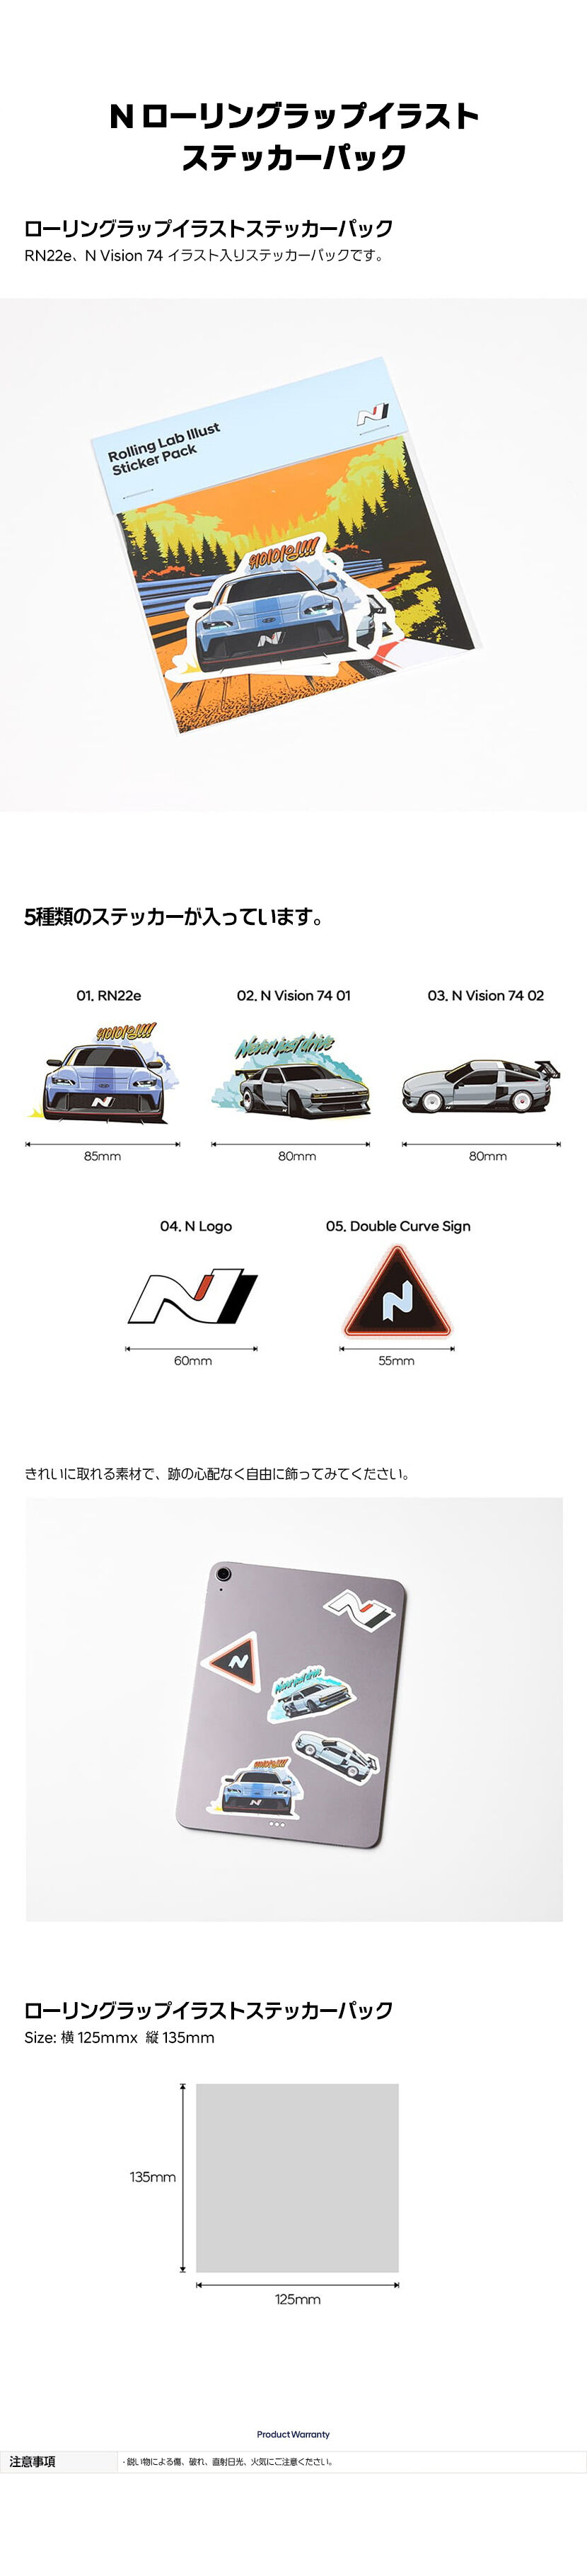 N Collection N ローリングラップイラストステッカーパック-ヒュンダイ ジャパン オンラインショップ